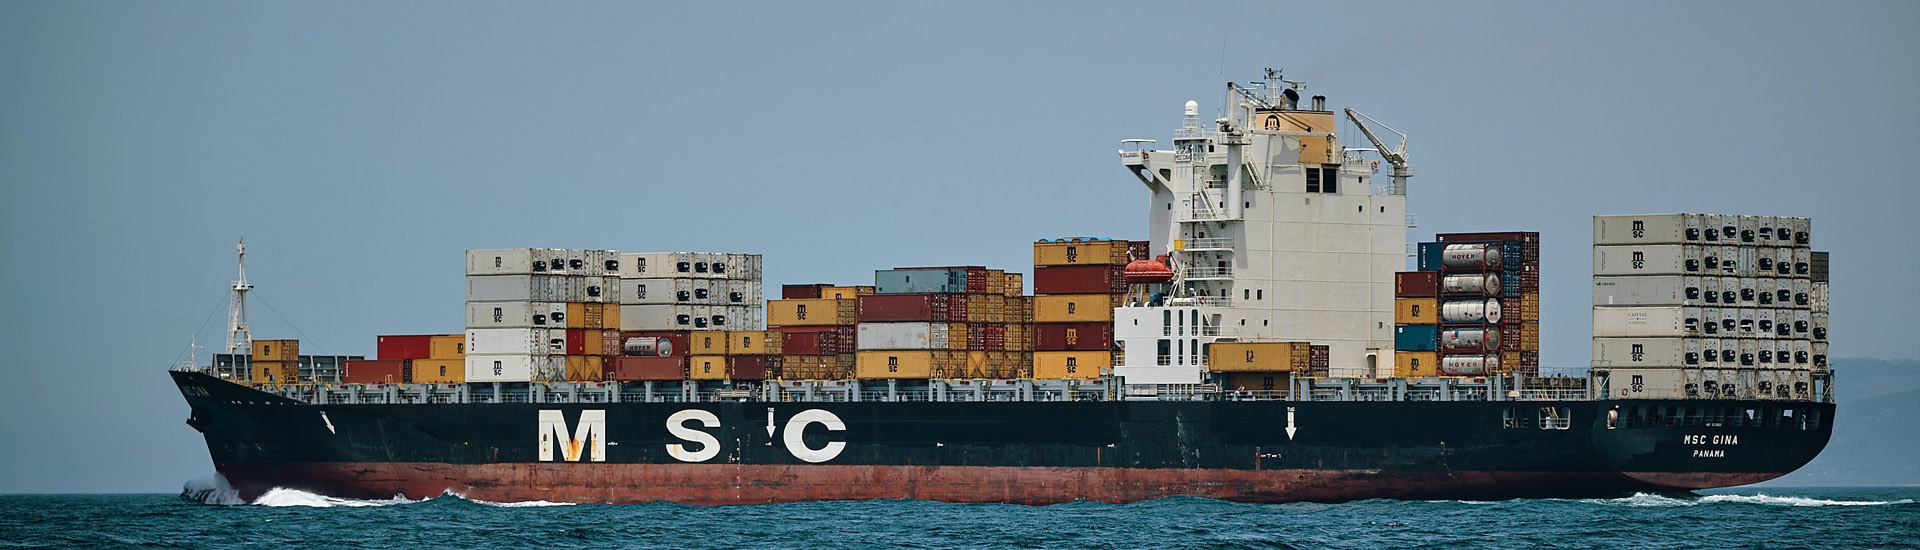 Maersk заказала первый в мире контейнеровоз, работающий на экологичном метаноле